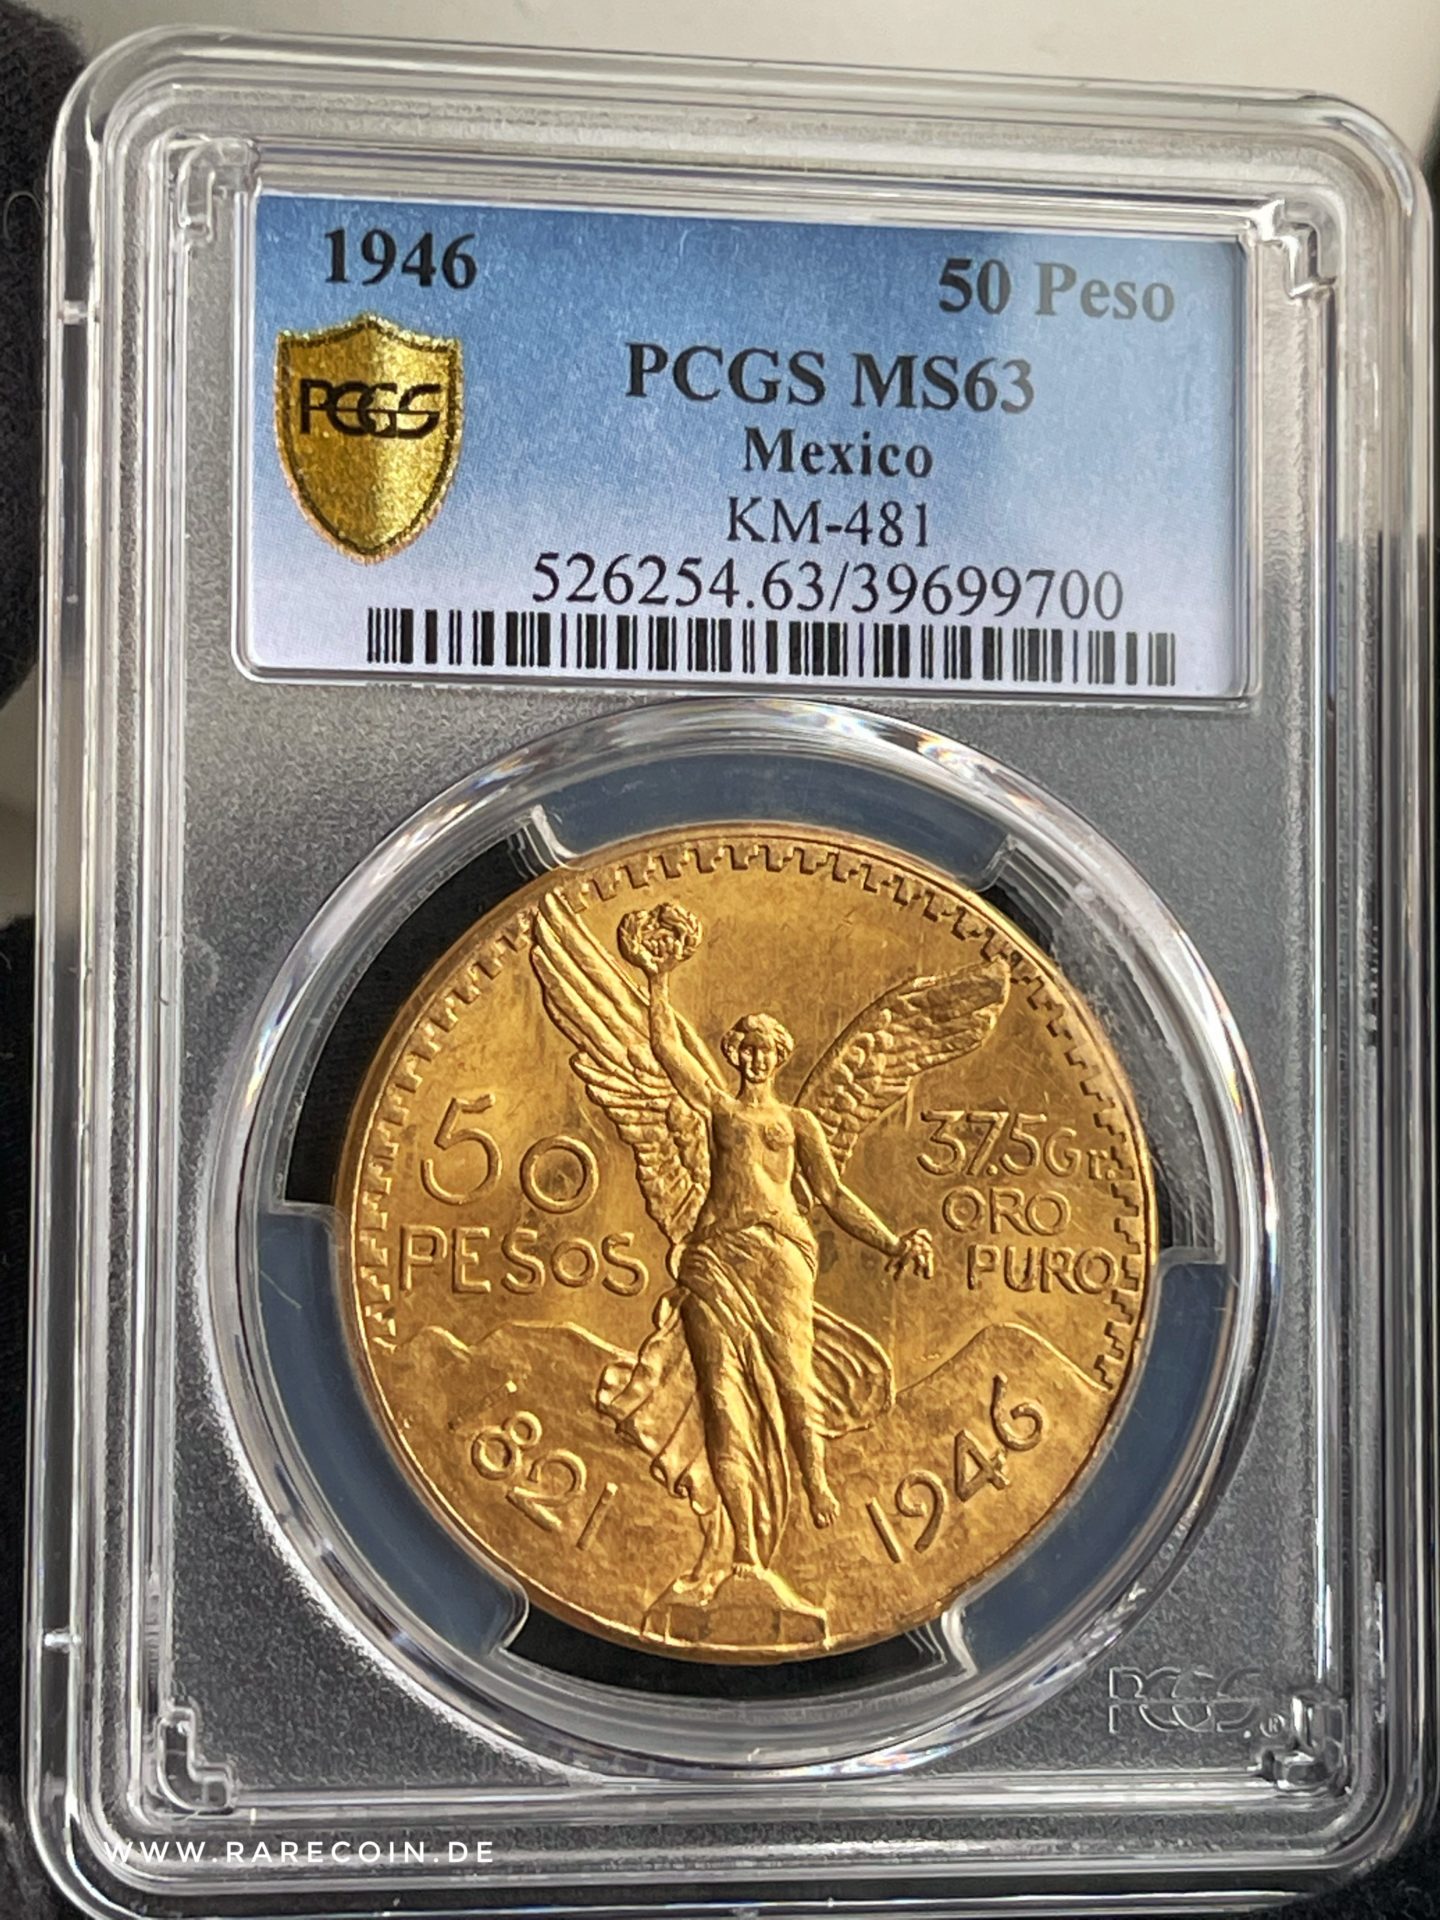 50 pesos 1946 centenario gold